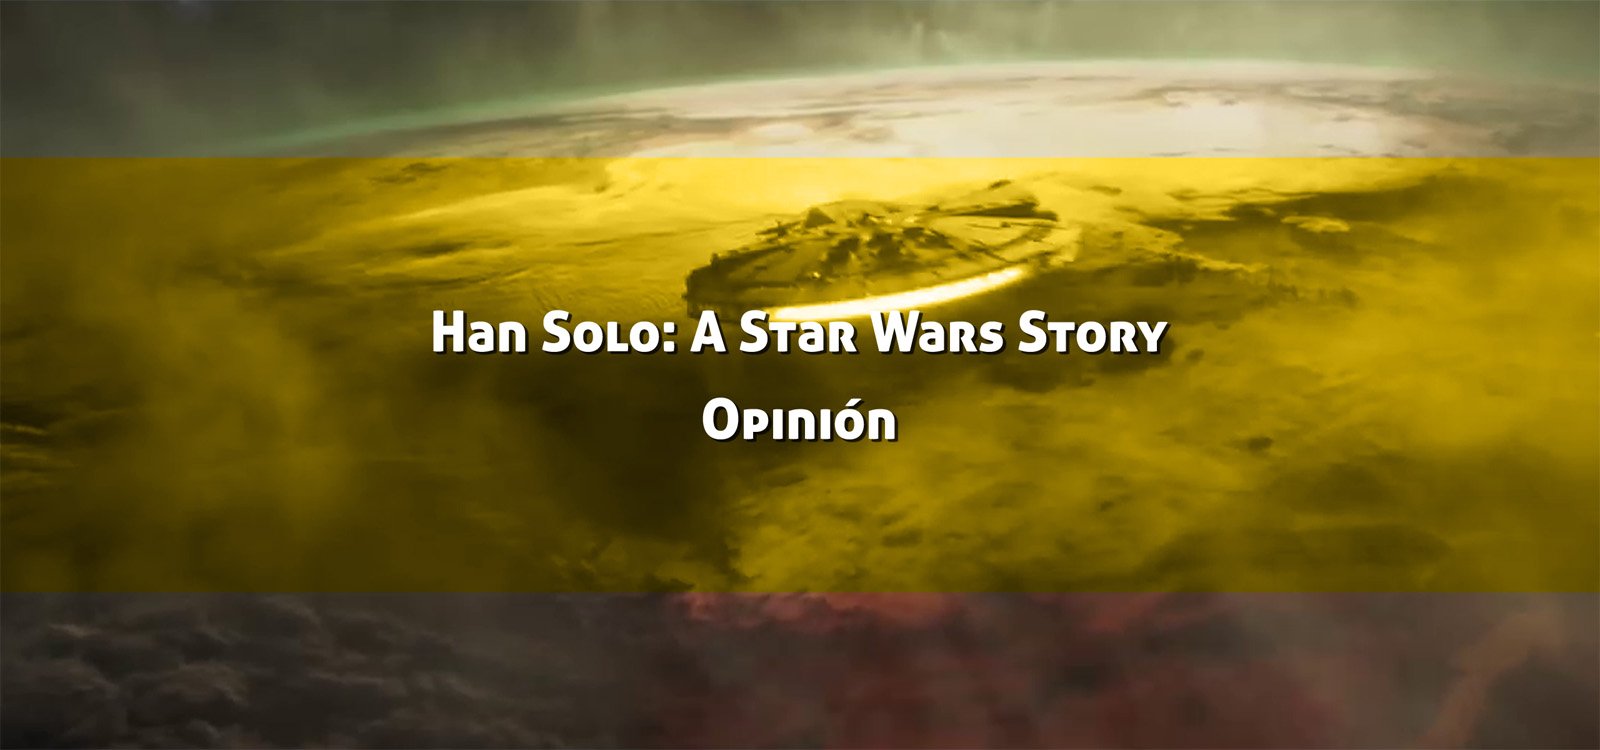 Han Solo: Una historia de Star Wars. Opinión de la pelicula.